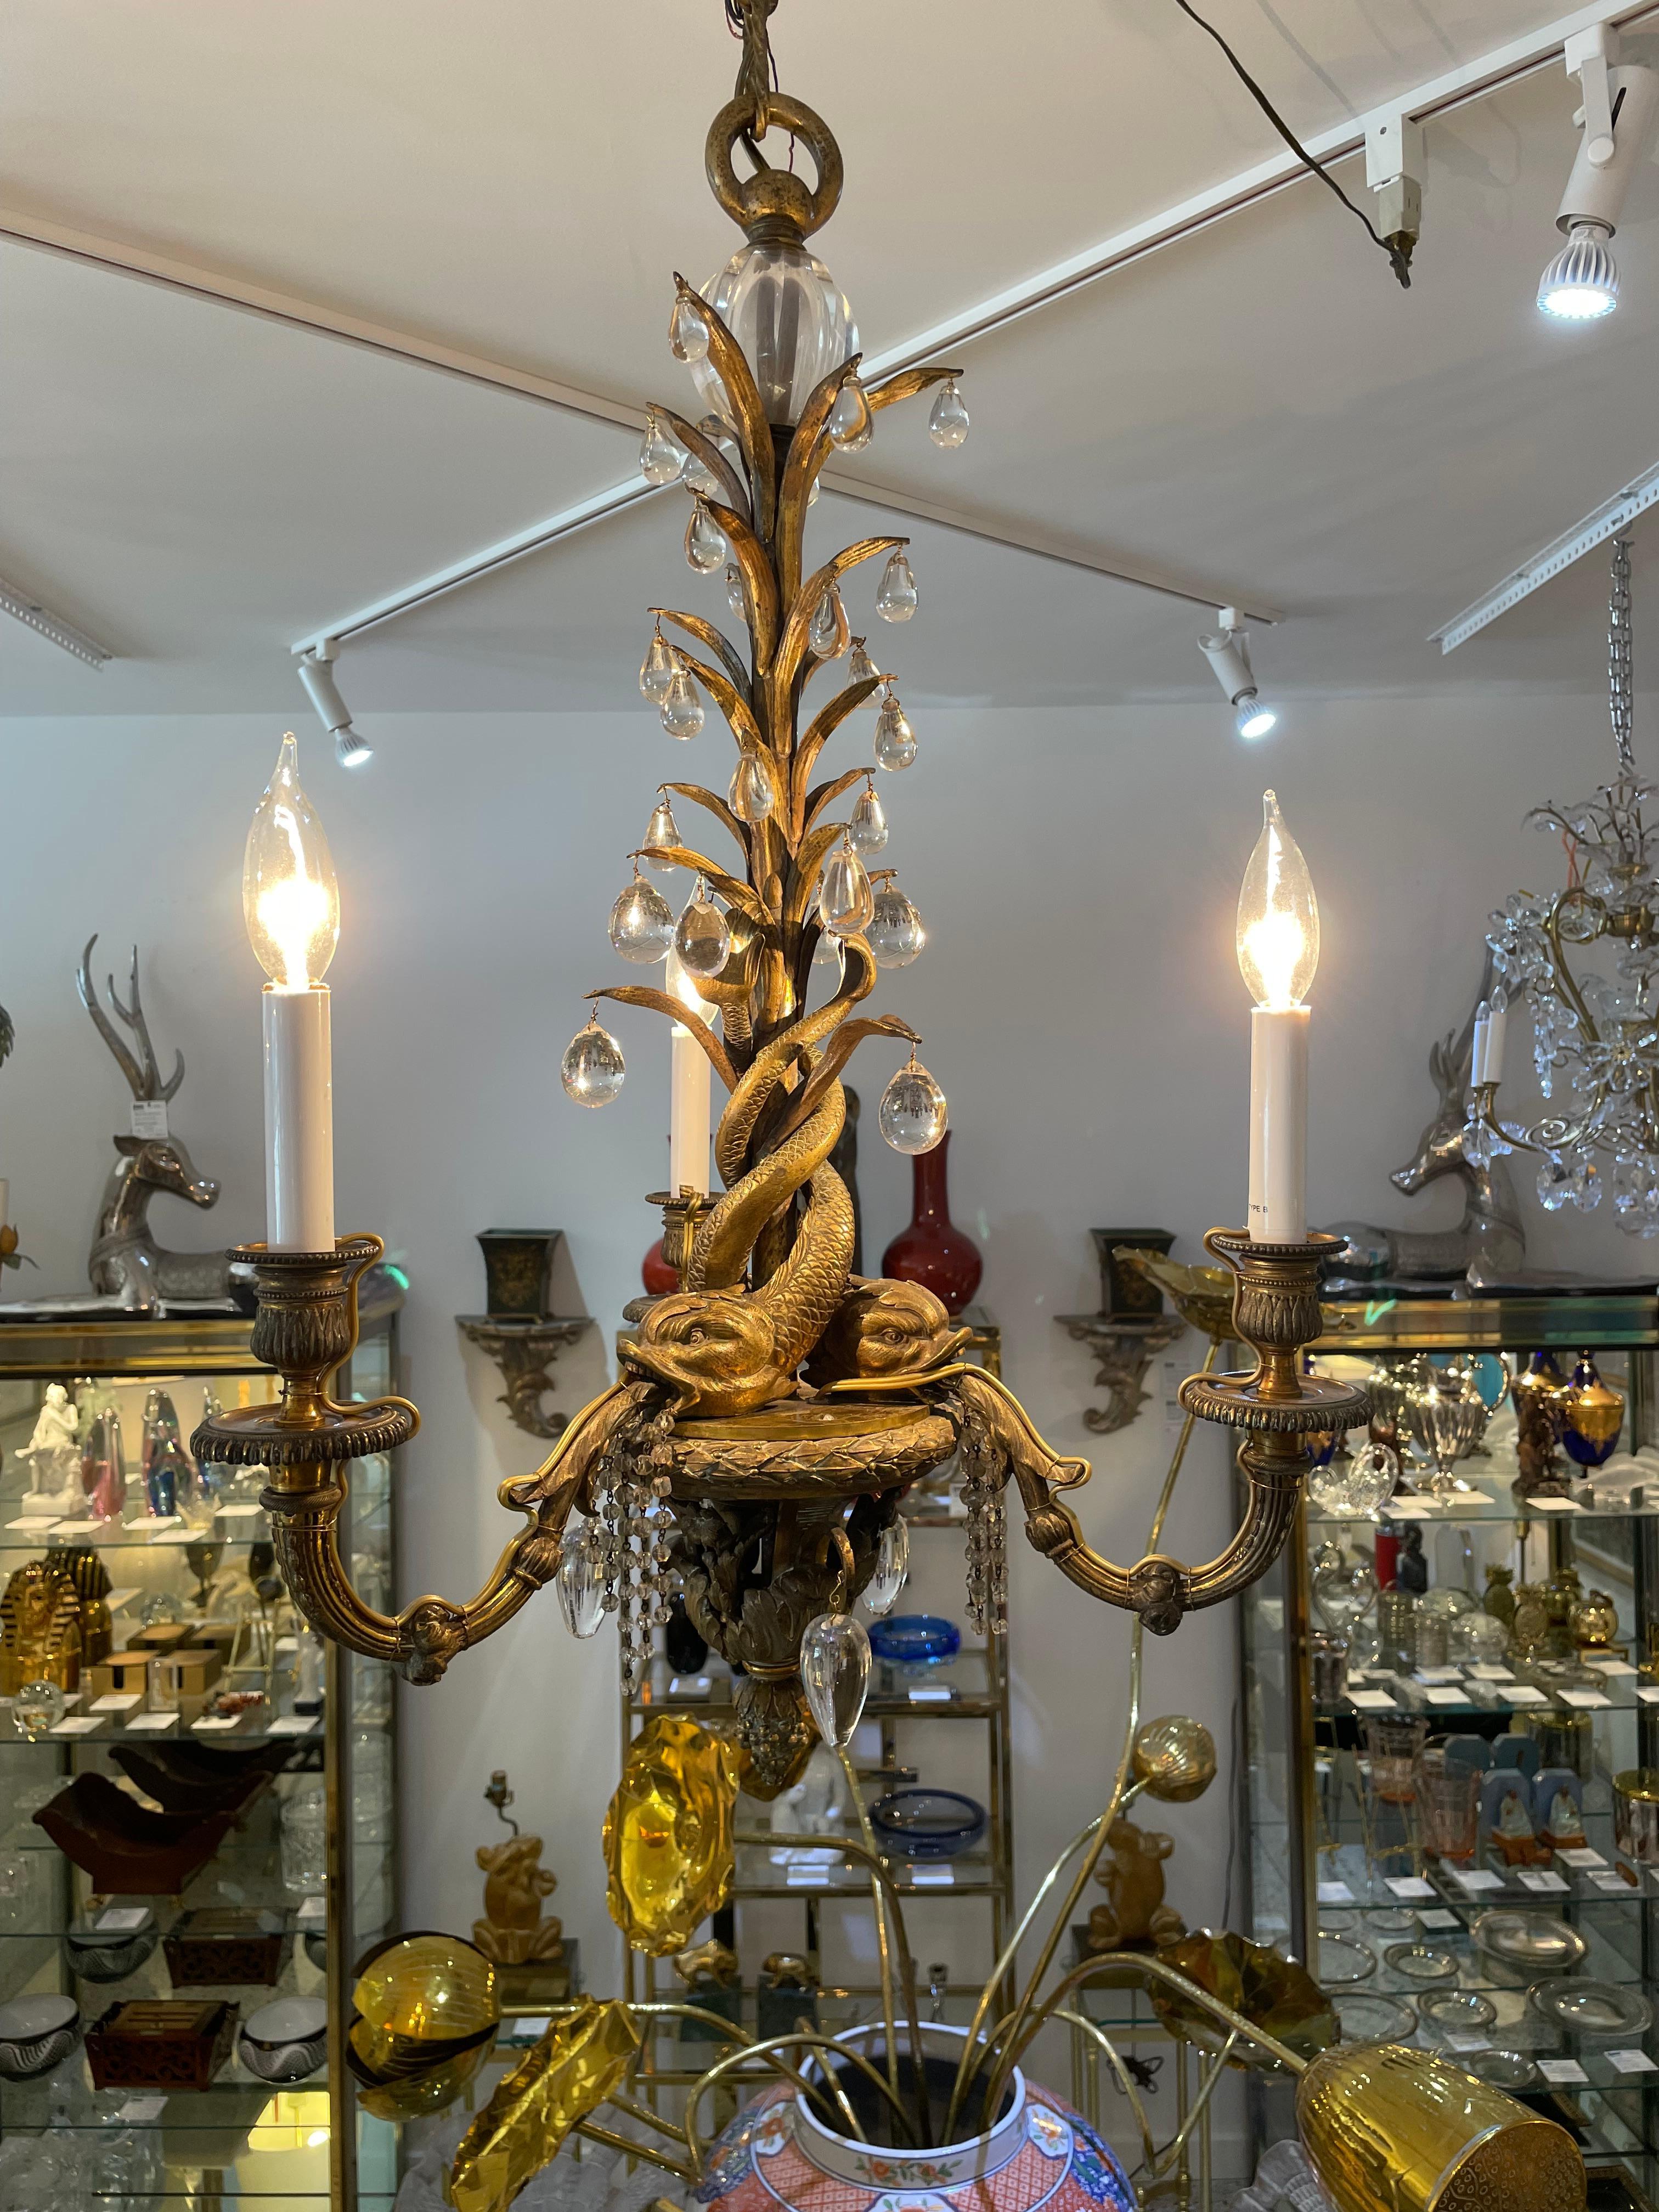 Ce lustre chic et élégant en bronze et cristal date du début du XXe siècle et est attribué à la Maison Jansen.  La pièce est ornée de trois serpents de mer entrelacés, dont les mâchoires sont ornées de perles de cristal, et d'un feuillage orné de